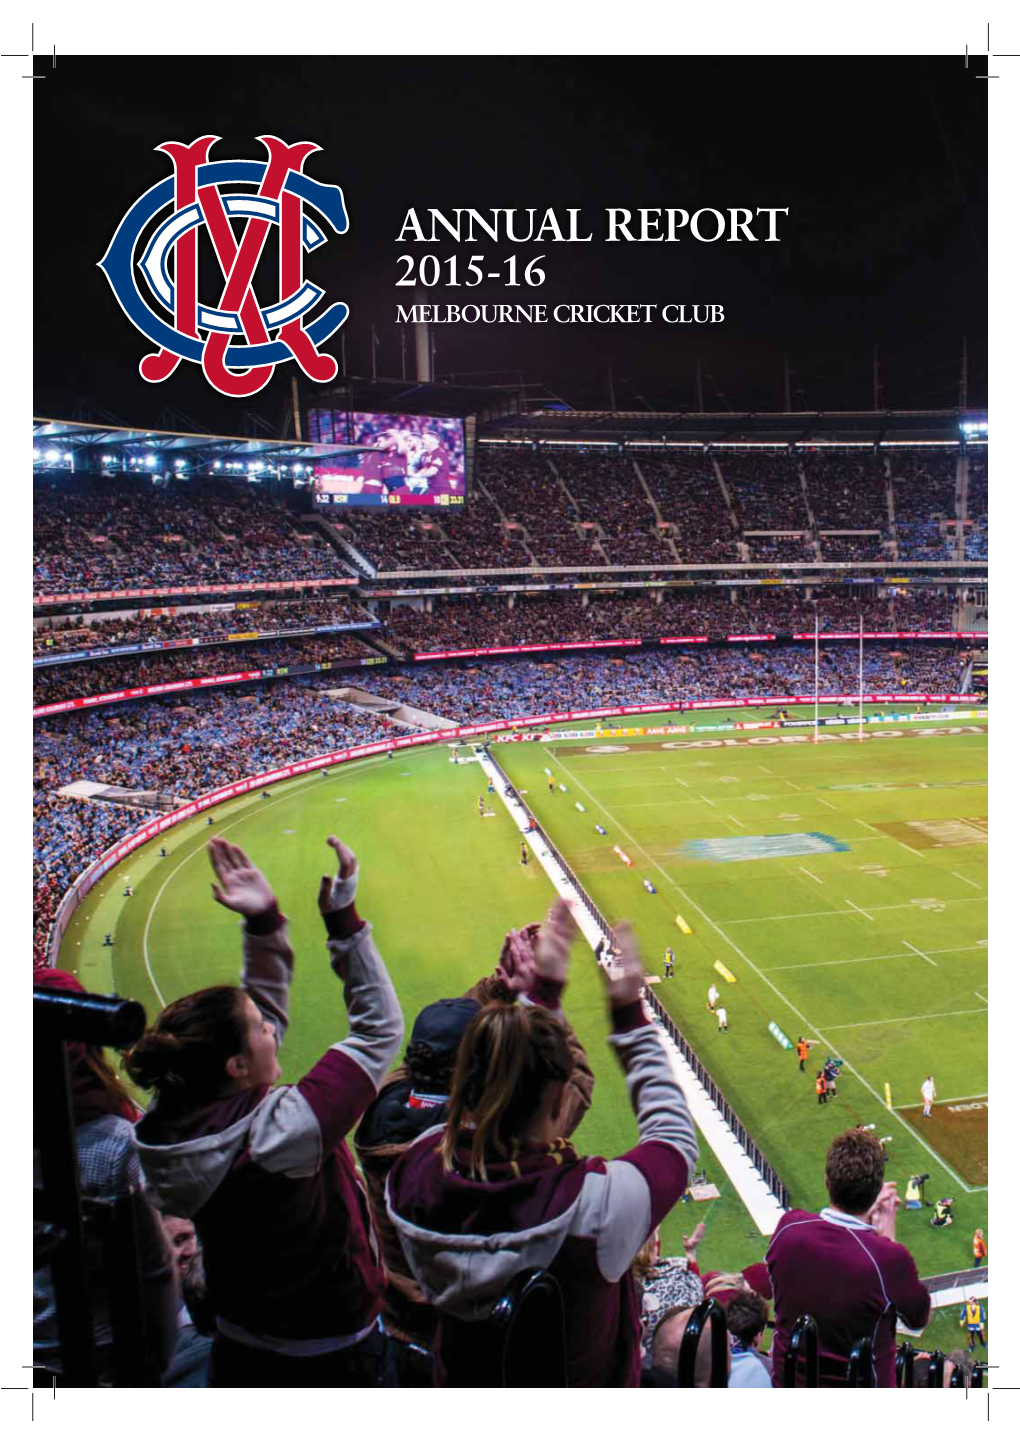 Annual Report 2015-16 Melbourne Cricket Club